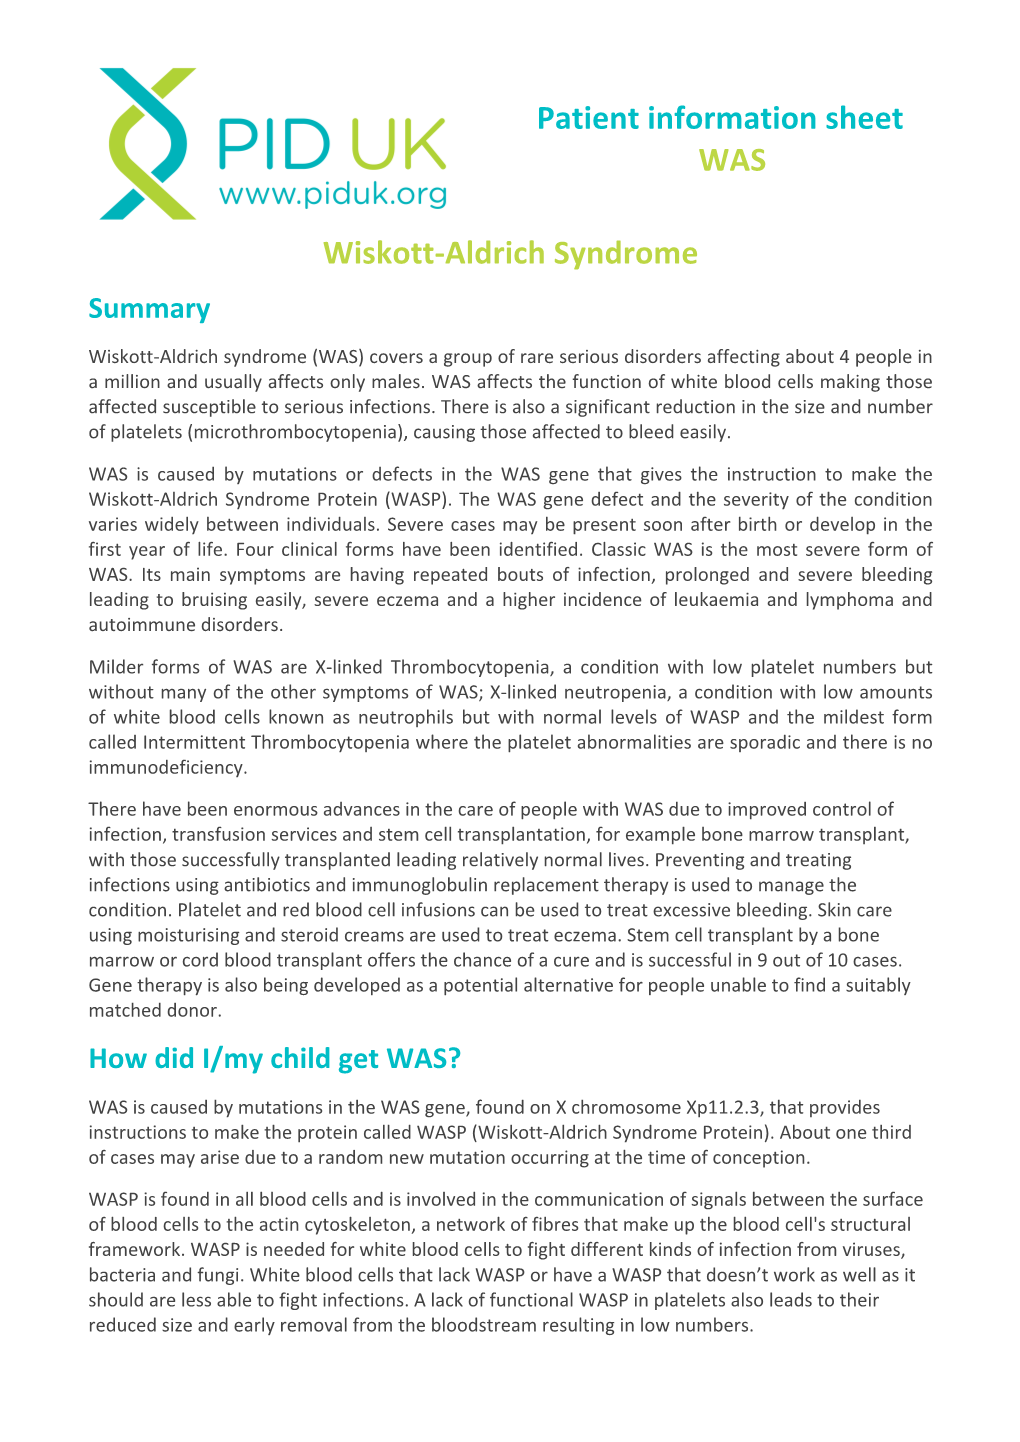 Patient Information Sheet WAS Wiskott‐Aldrich Syndrome